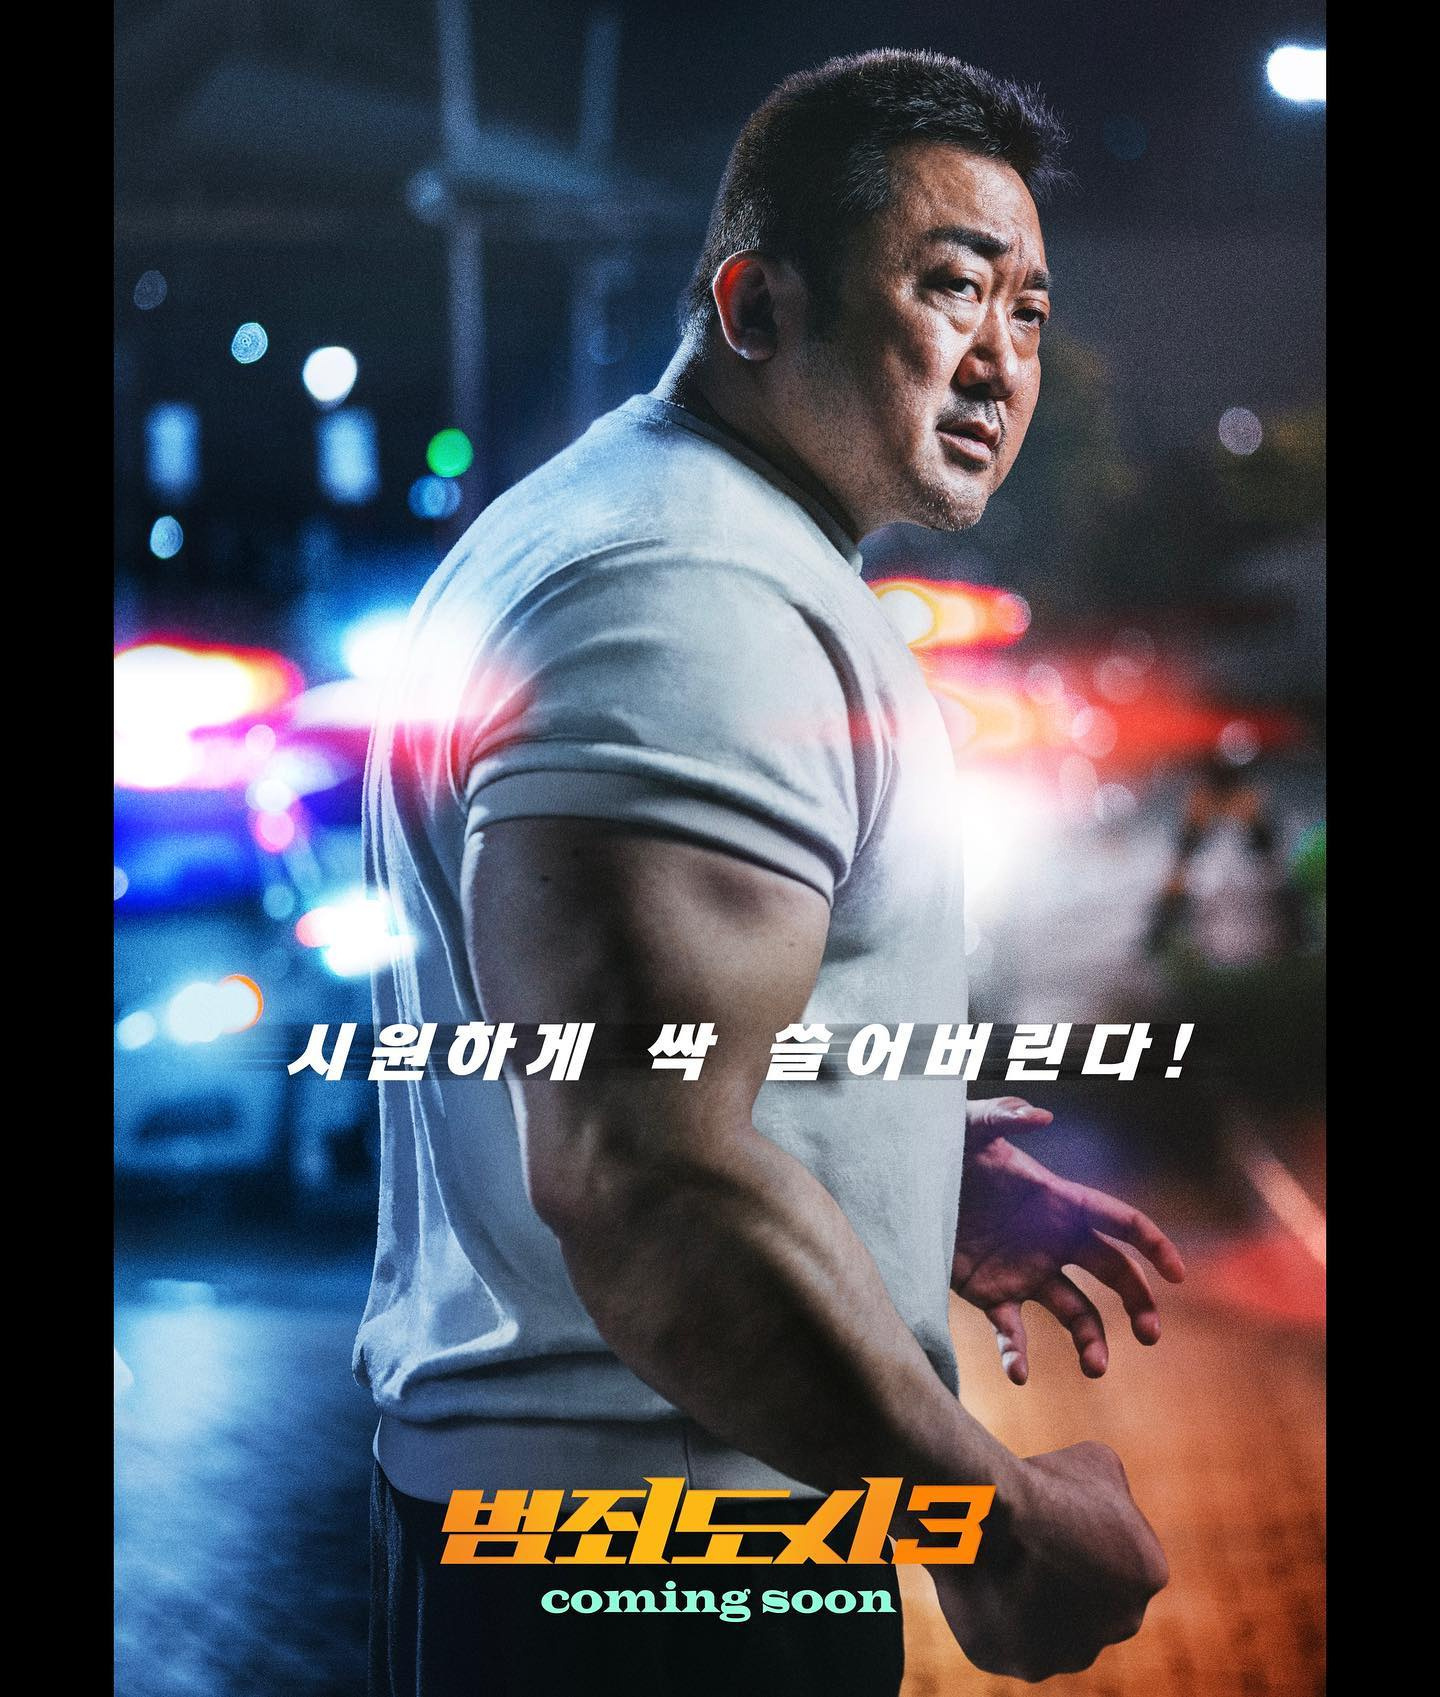 【影視動漫】馬東錫《犯罪都市3》先導預告 5.31韓國上映-第1張